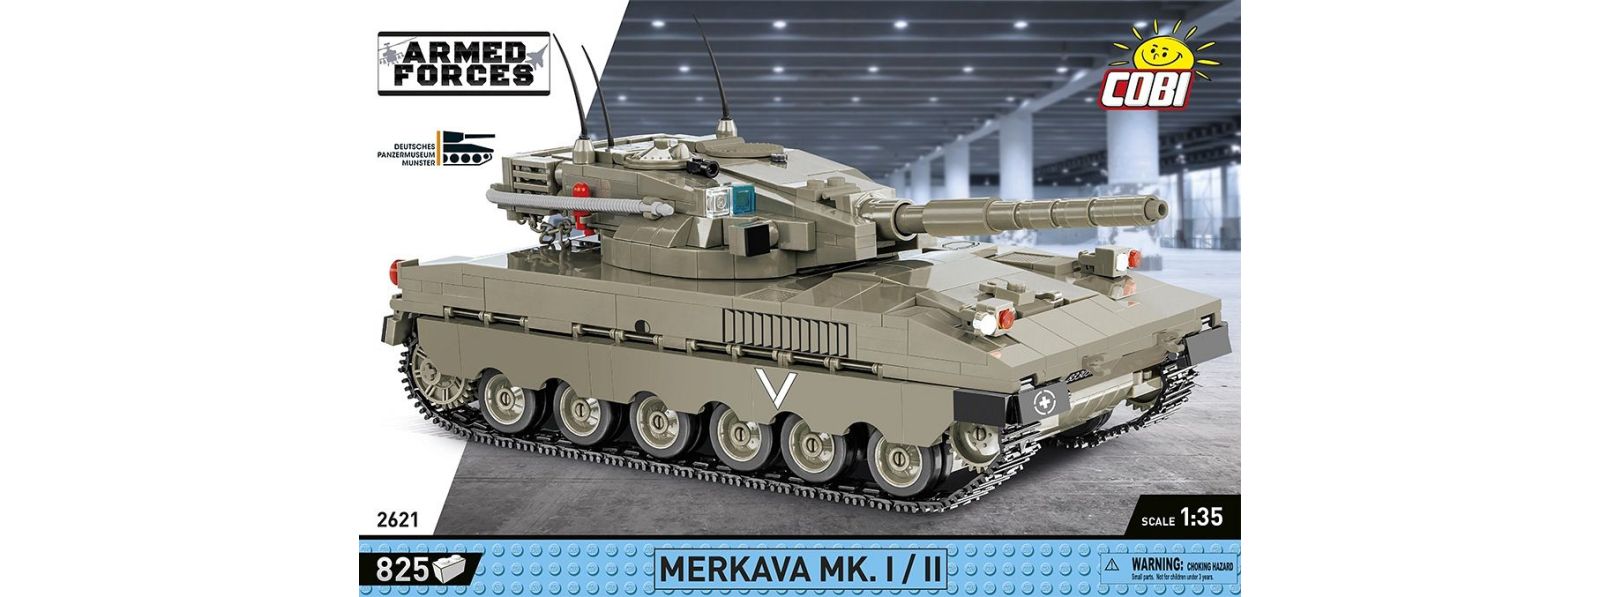 Merkava Mk.1. - Review - Youtube